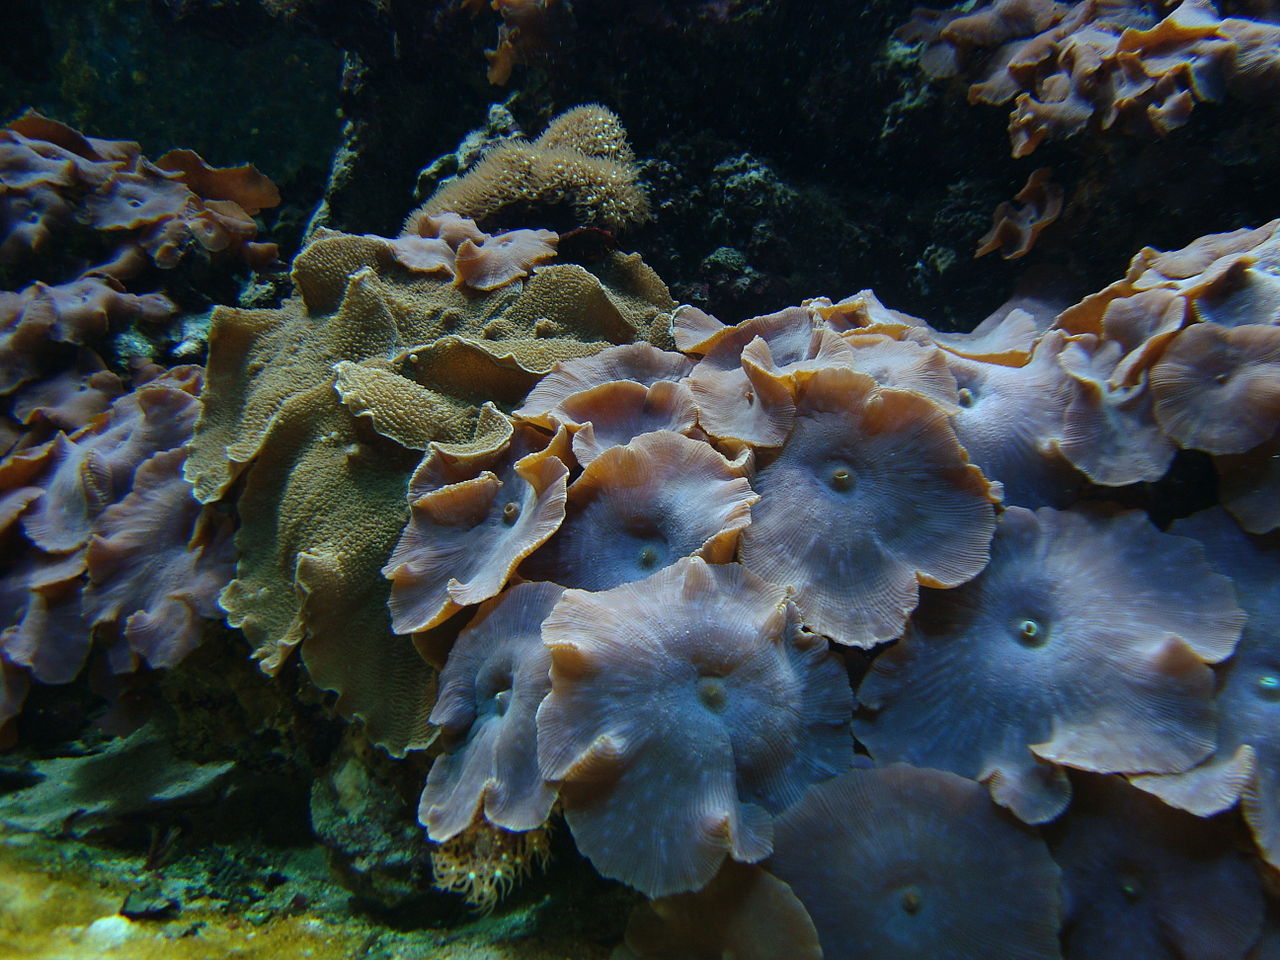 Mushroom corals - Discosoma (synonym Actinodiscus)